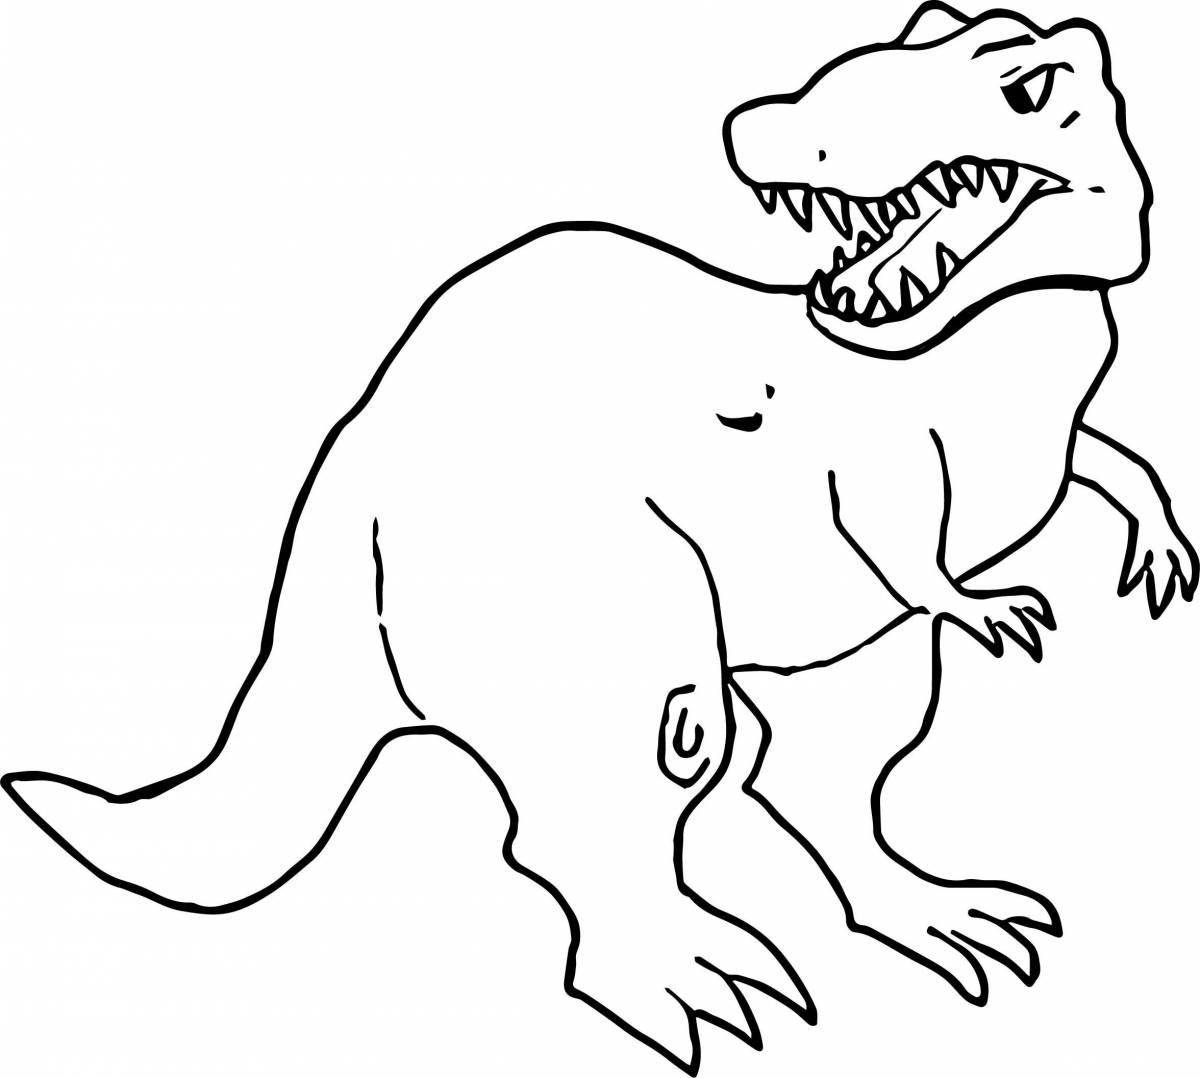 Очаровательная раскраска динозавров рекс для детей